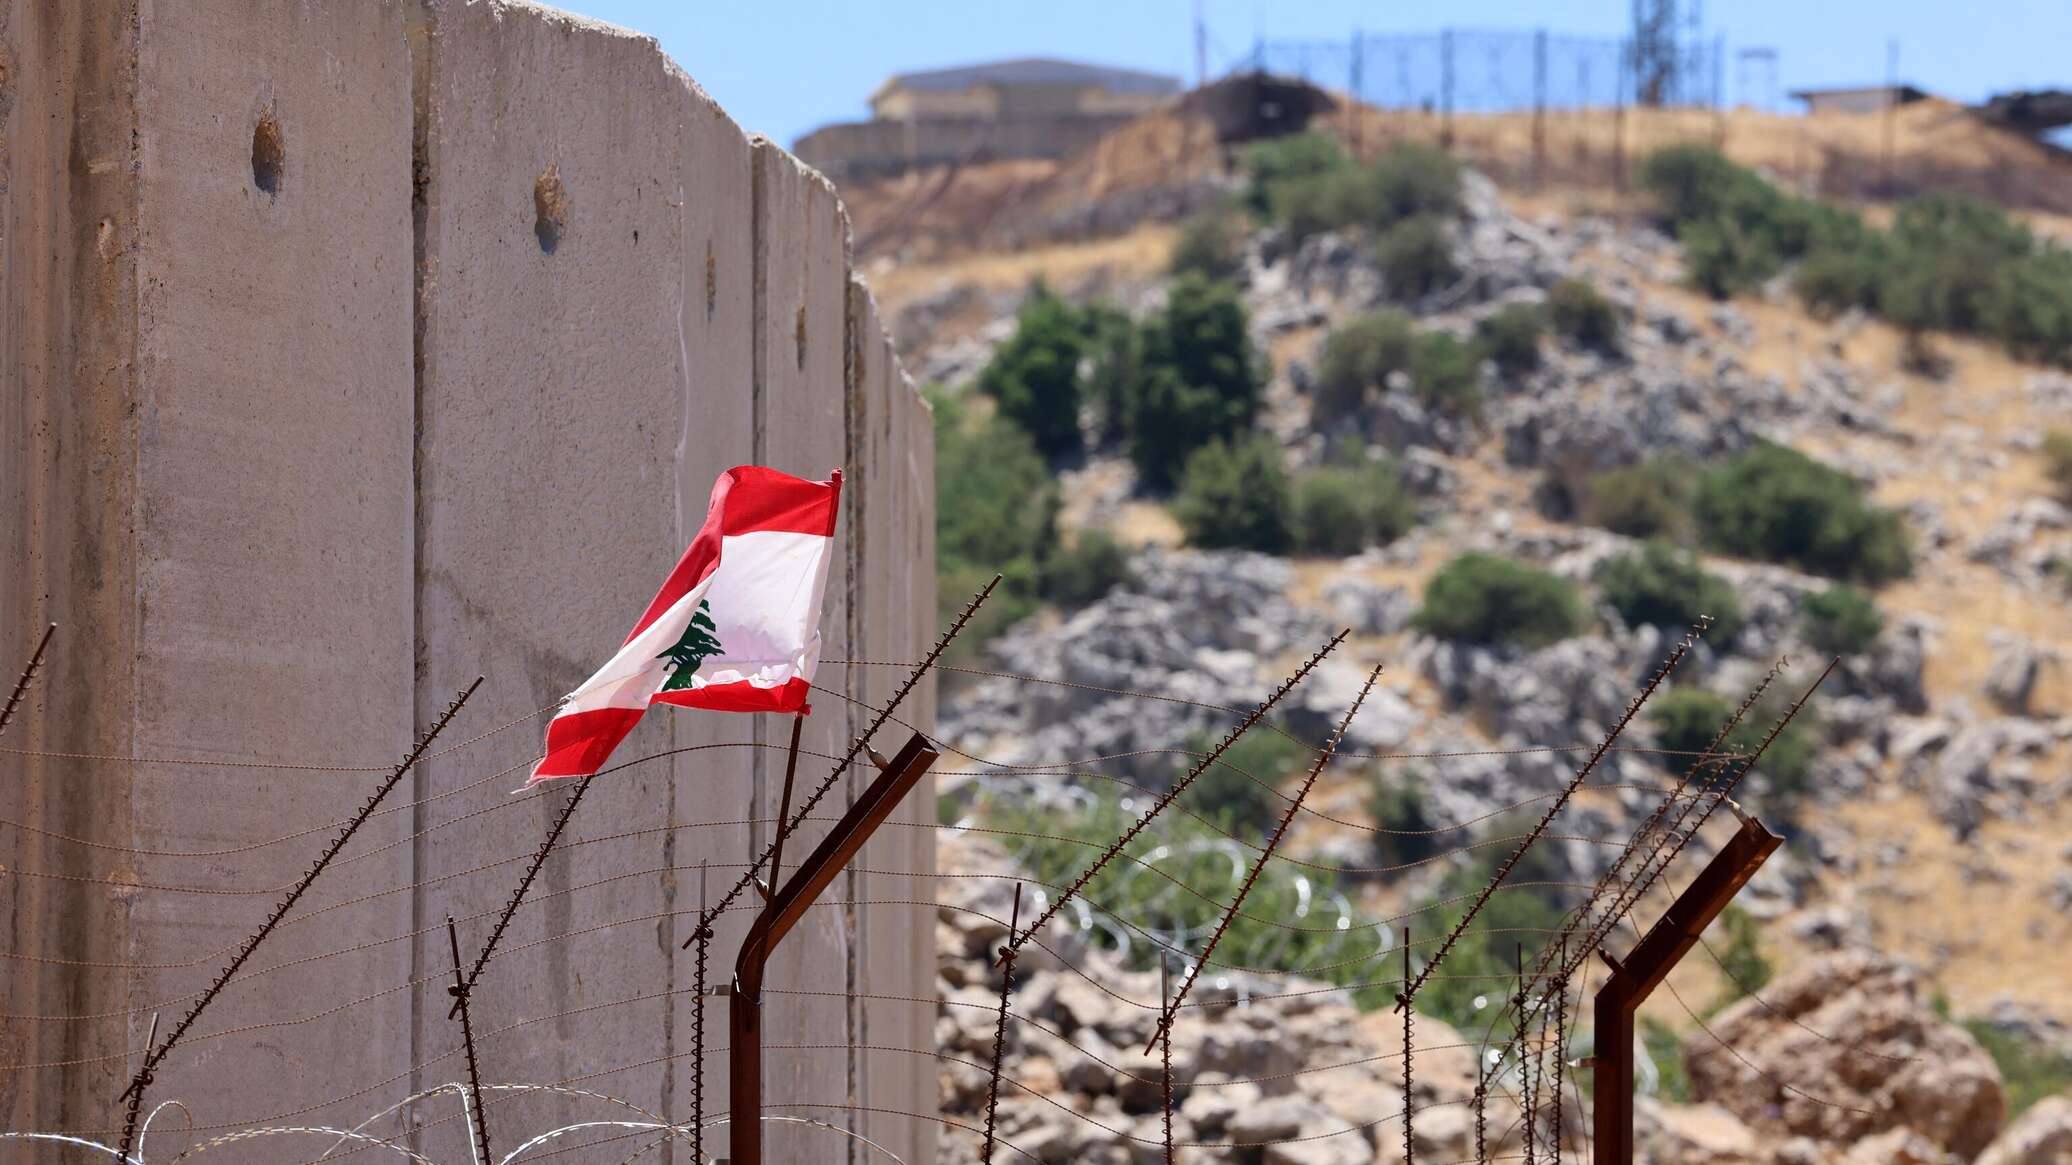 الجيش الإسرائيلي يهاجم مواقع لـ "حزب الله" جنوب لبنان بعد تسلل جسم مجهول إلى إسرائيل